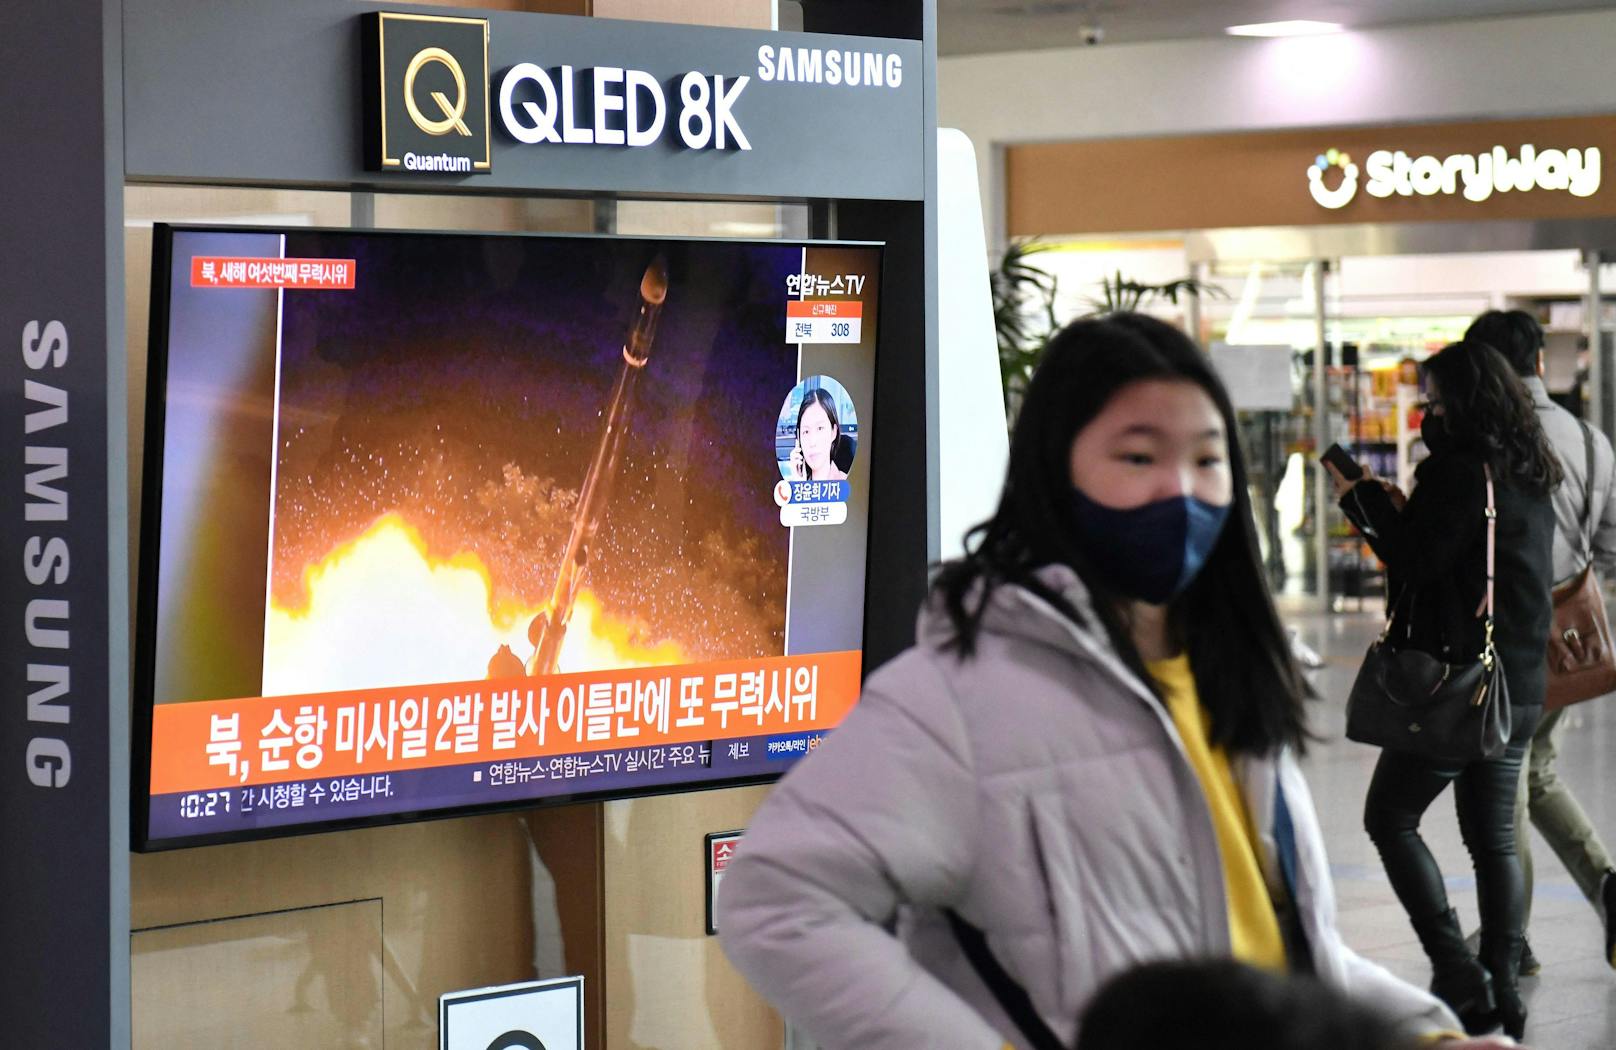 Die von Nordkorea getestete Rakete hat gemäß dem südkoreanischen Präsidenten gegen UNO-Resolutionen verstoßen: Ein Nachrichtensender in Seoul zeigt einen Raketenstart. (30. Januar 2022)